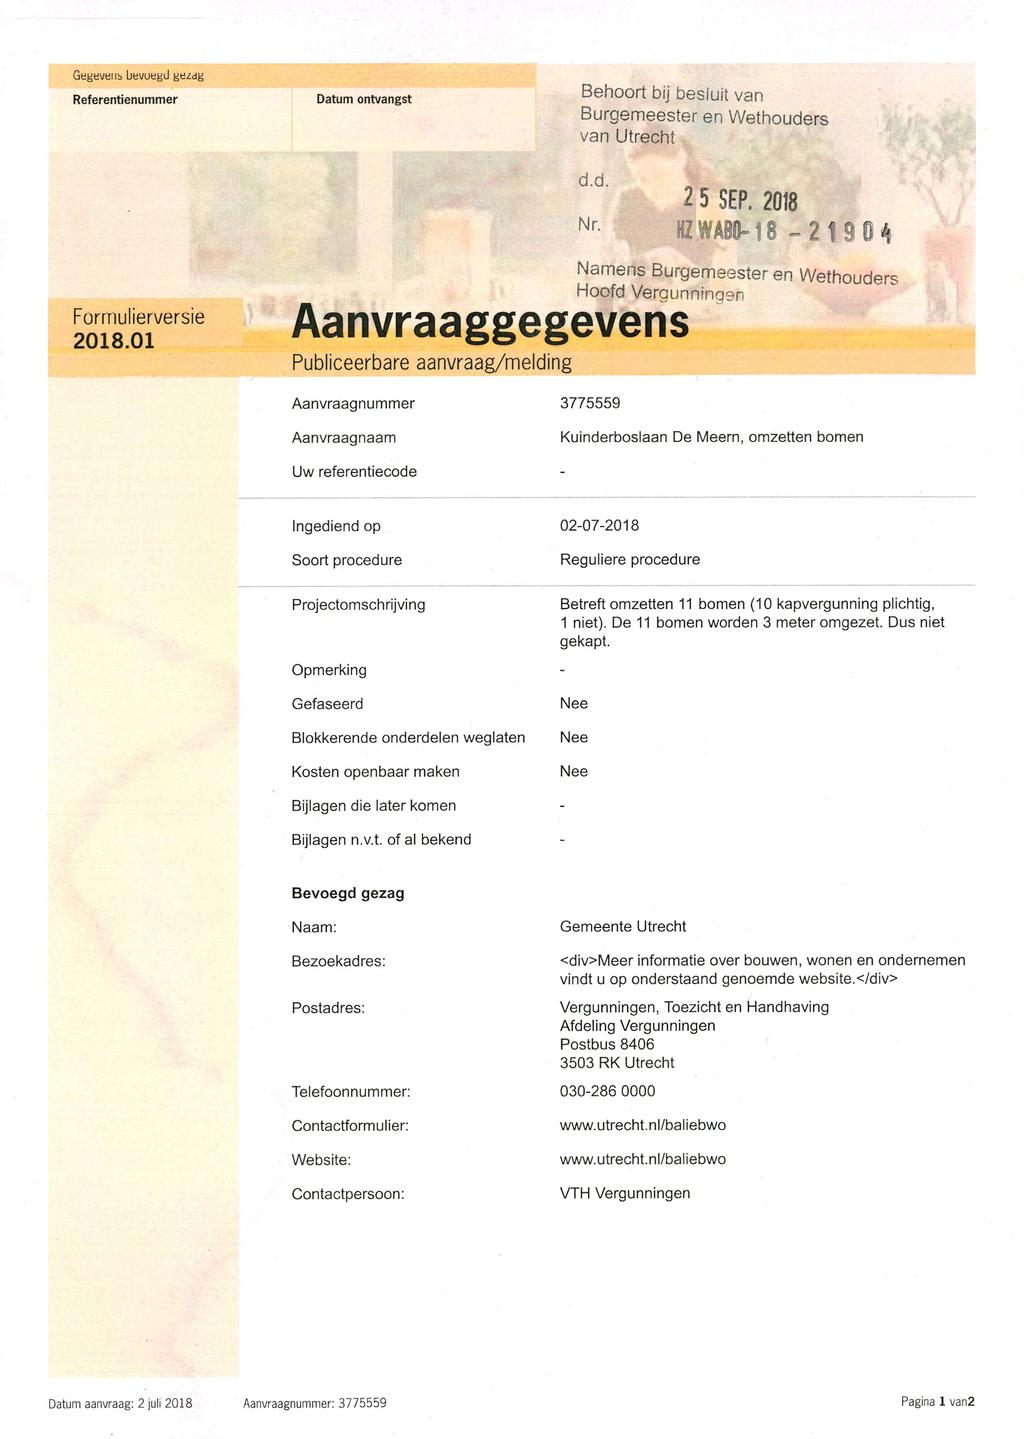 Gegereiib bevuegü gbzdg Referentienummer Datum ontvangst Behoort bij besluit van Burgemeester en Wethouders van Utrecht 2 5 SEP. 2018 82WABM8-21904 Formulierversie 2018.